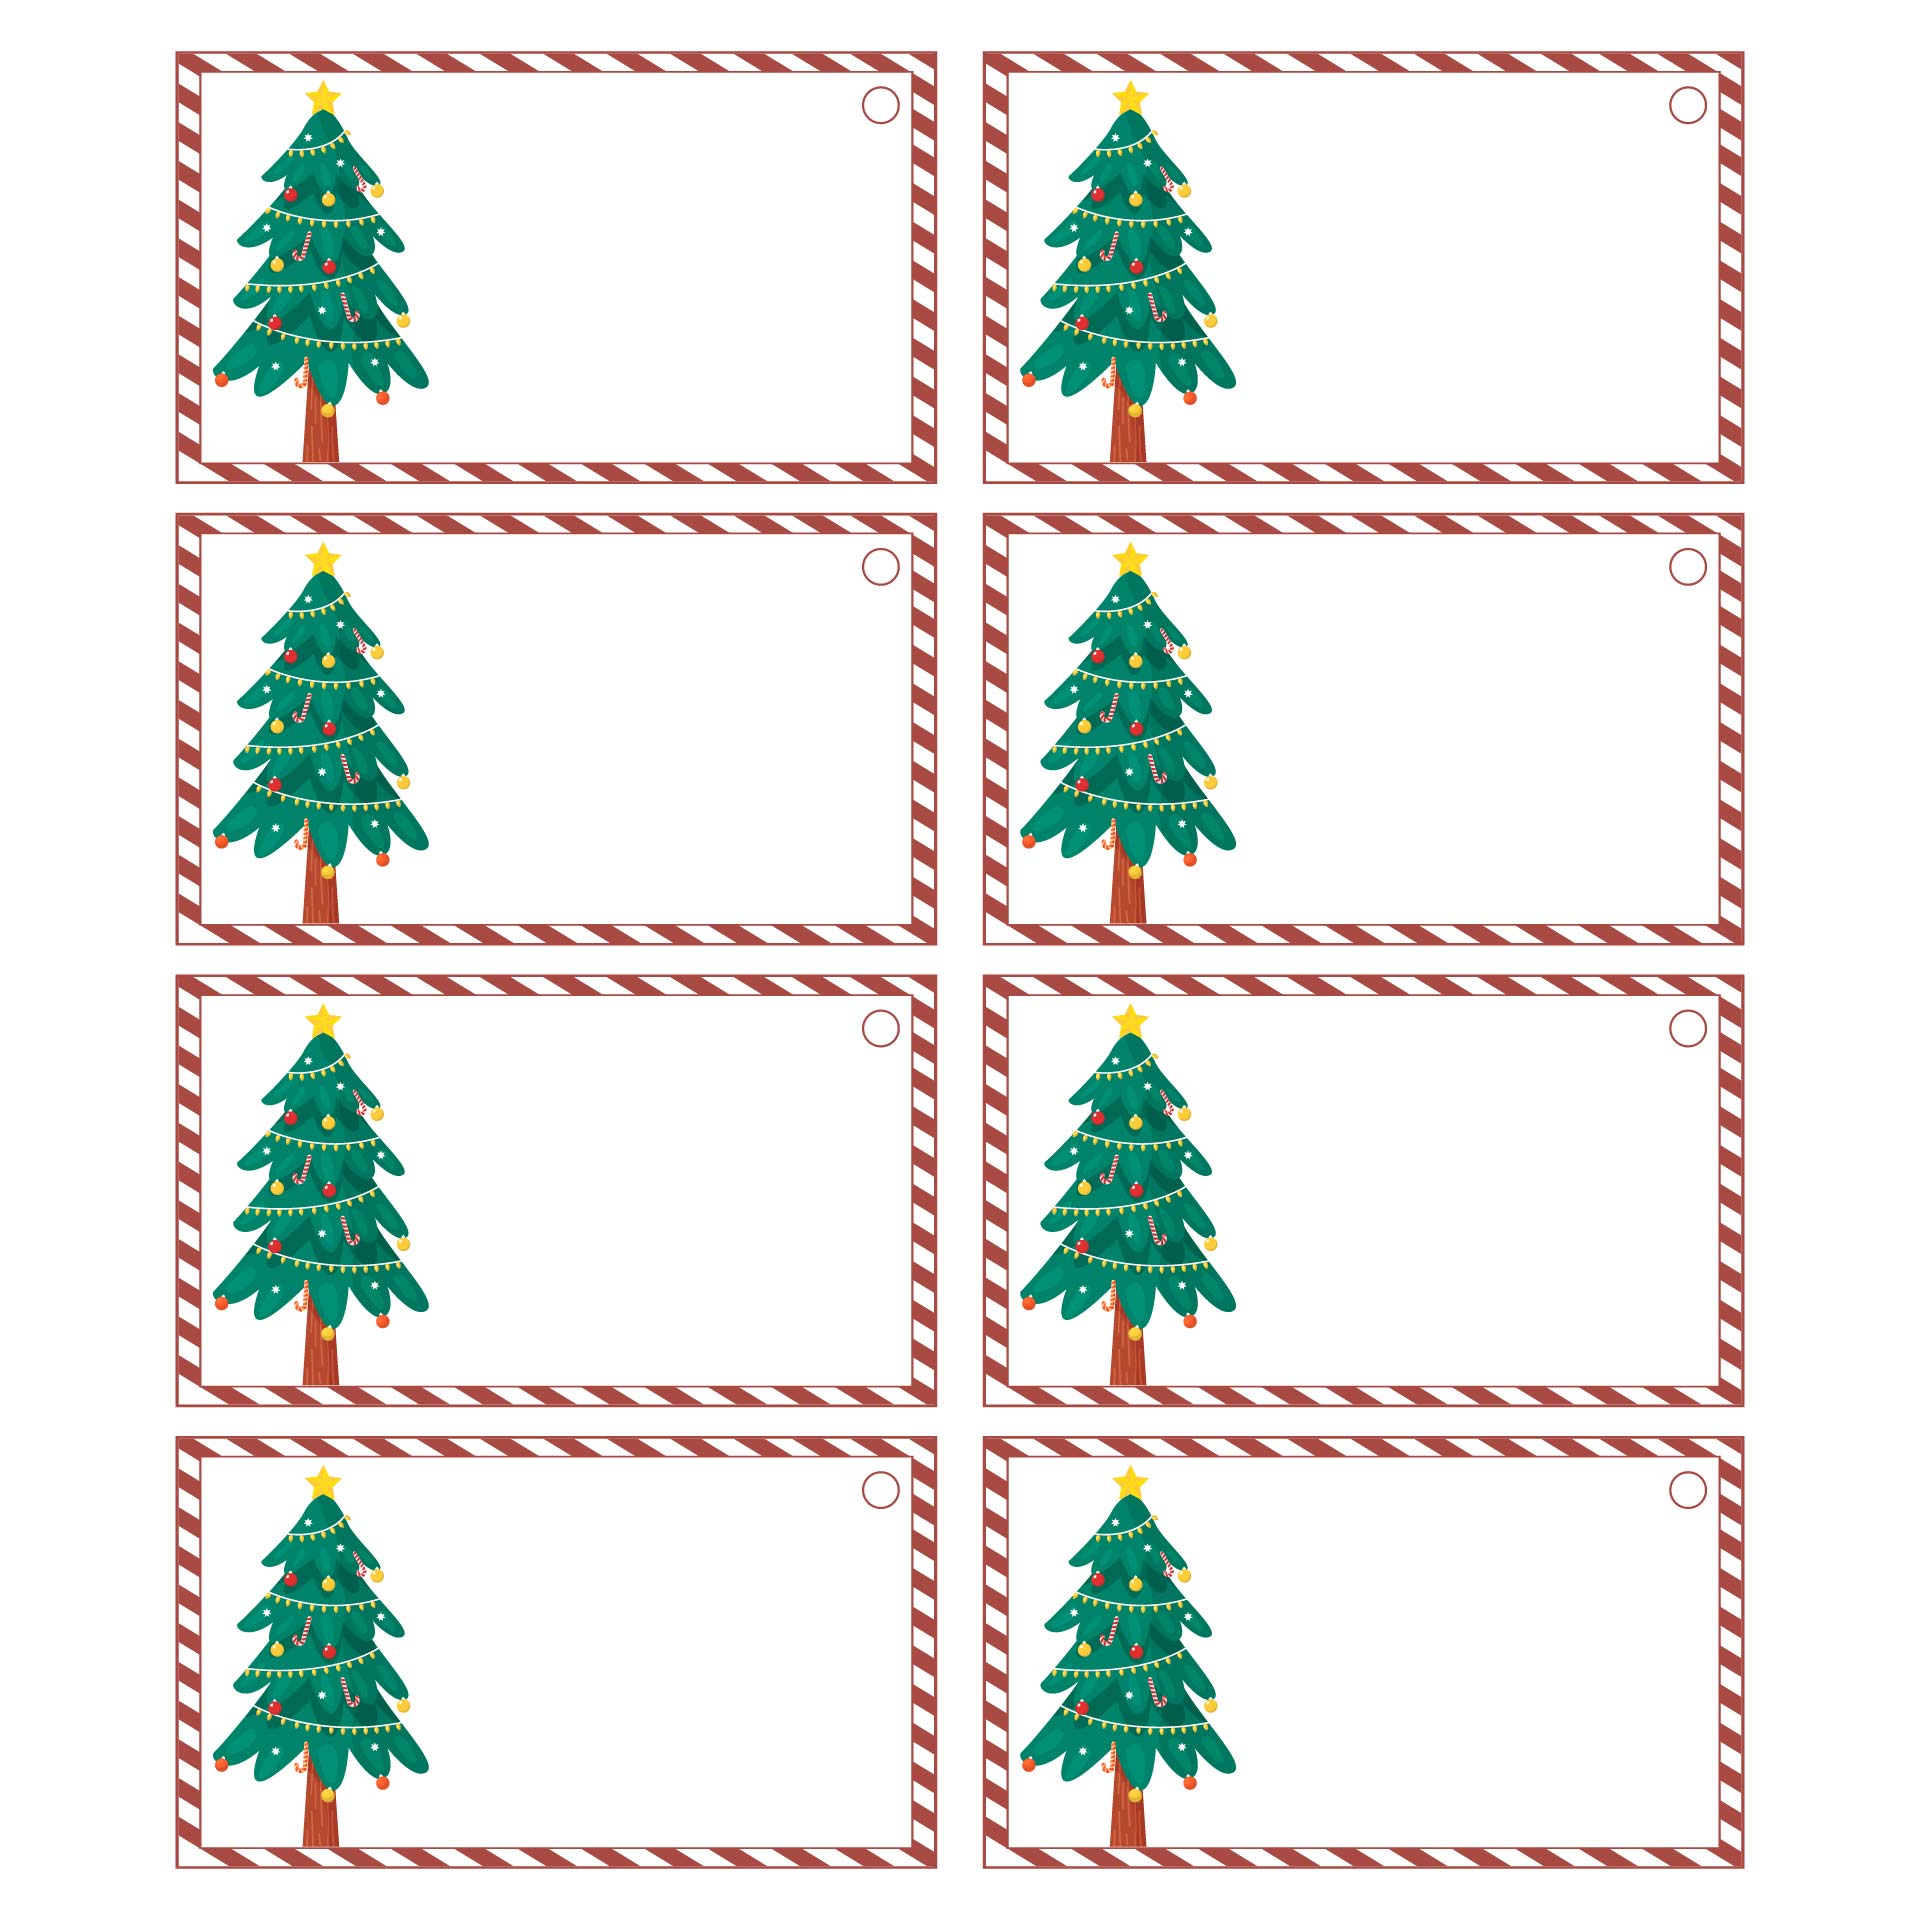 Printable Blank Christmas Gift Tags Templates